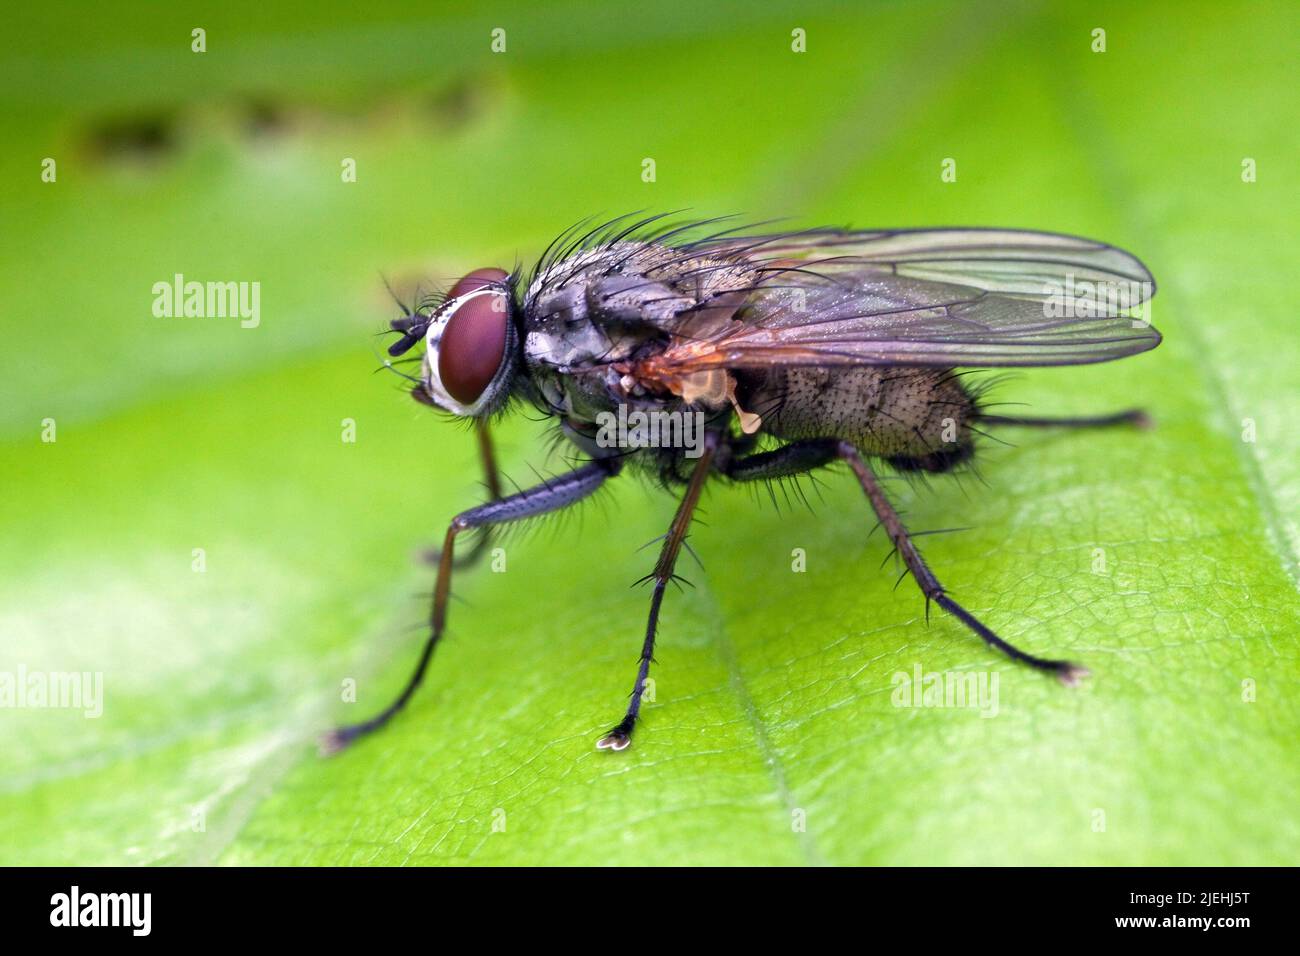 Hausfliege, Fliege, (Muscidae), Echte Fliegen, Stock Photo